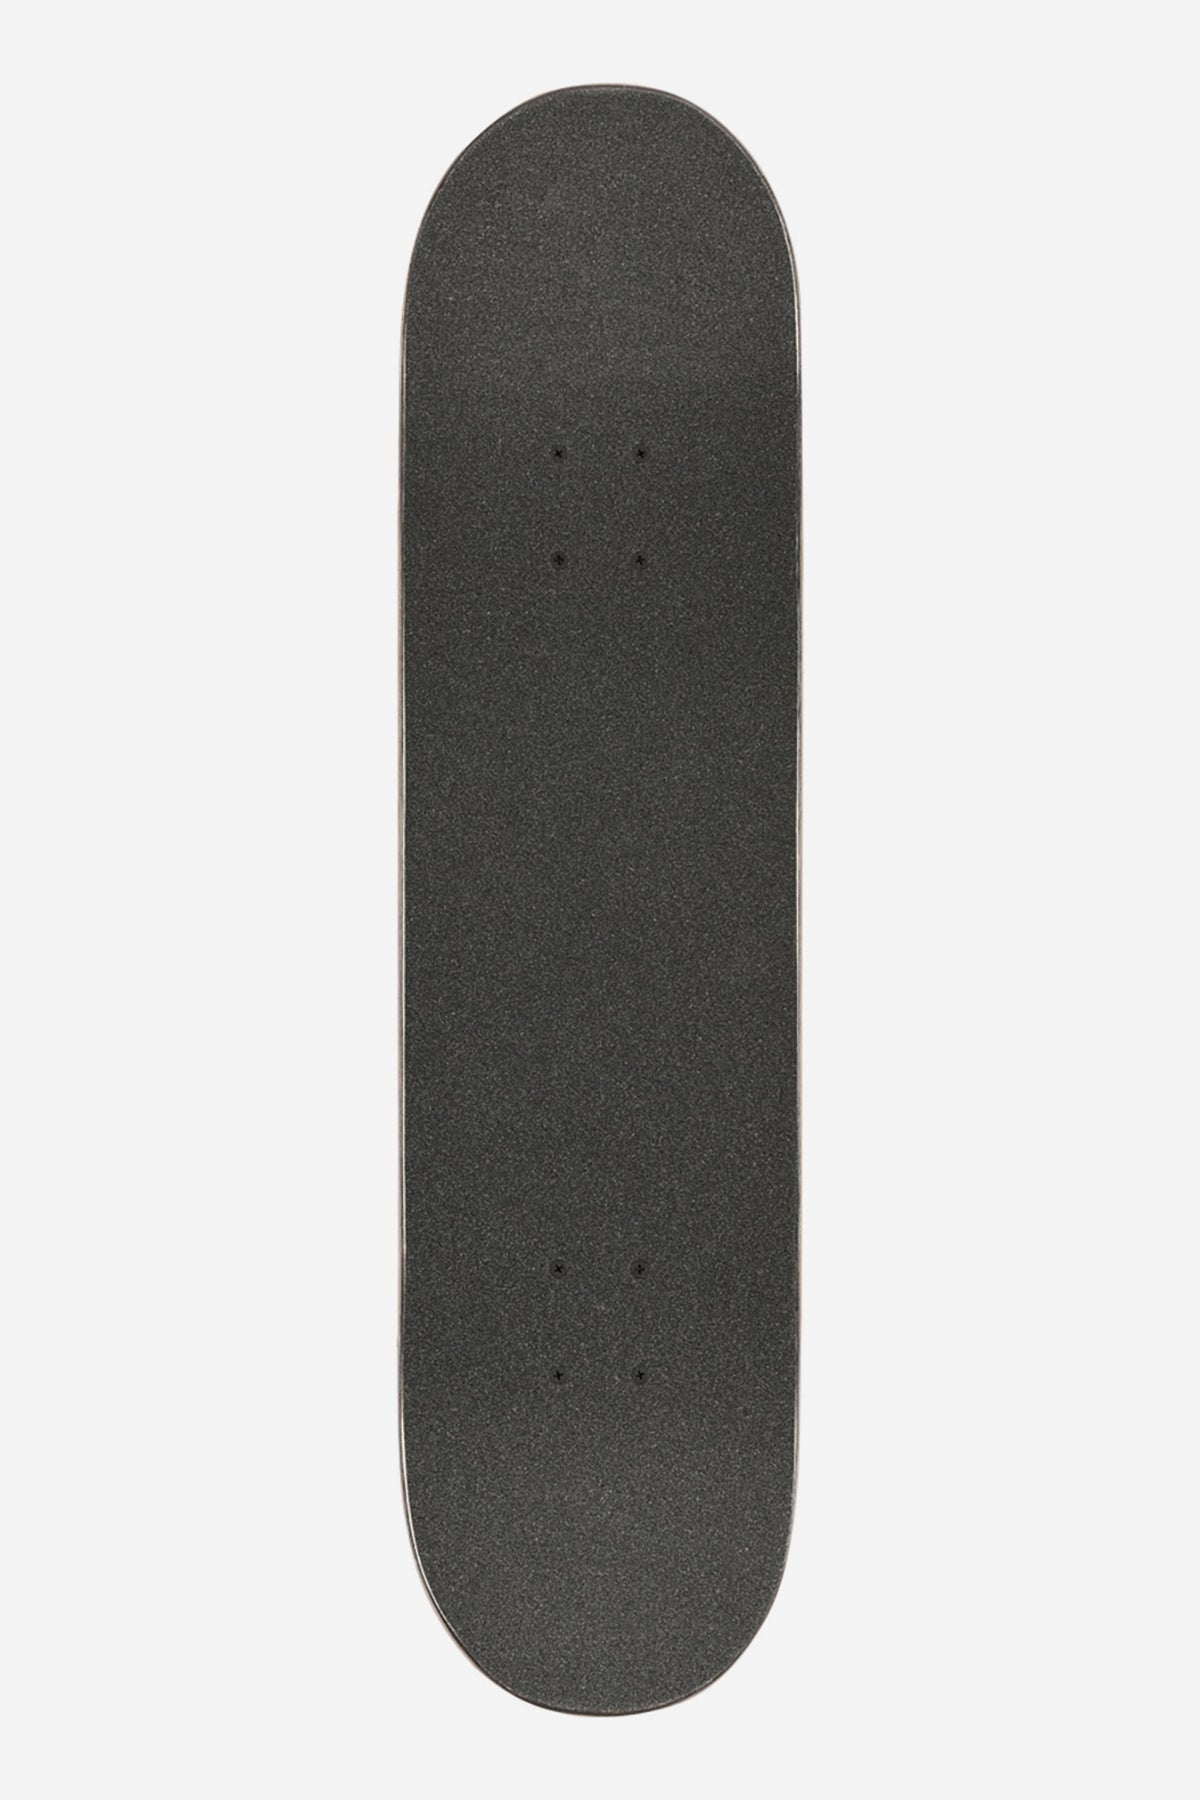 Globe - Goodstock - Navy - 7.875" Complet Skateboard